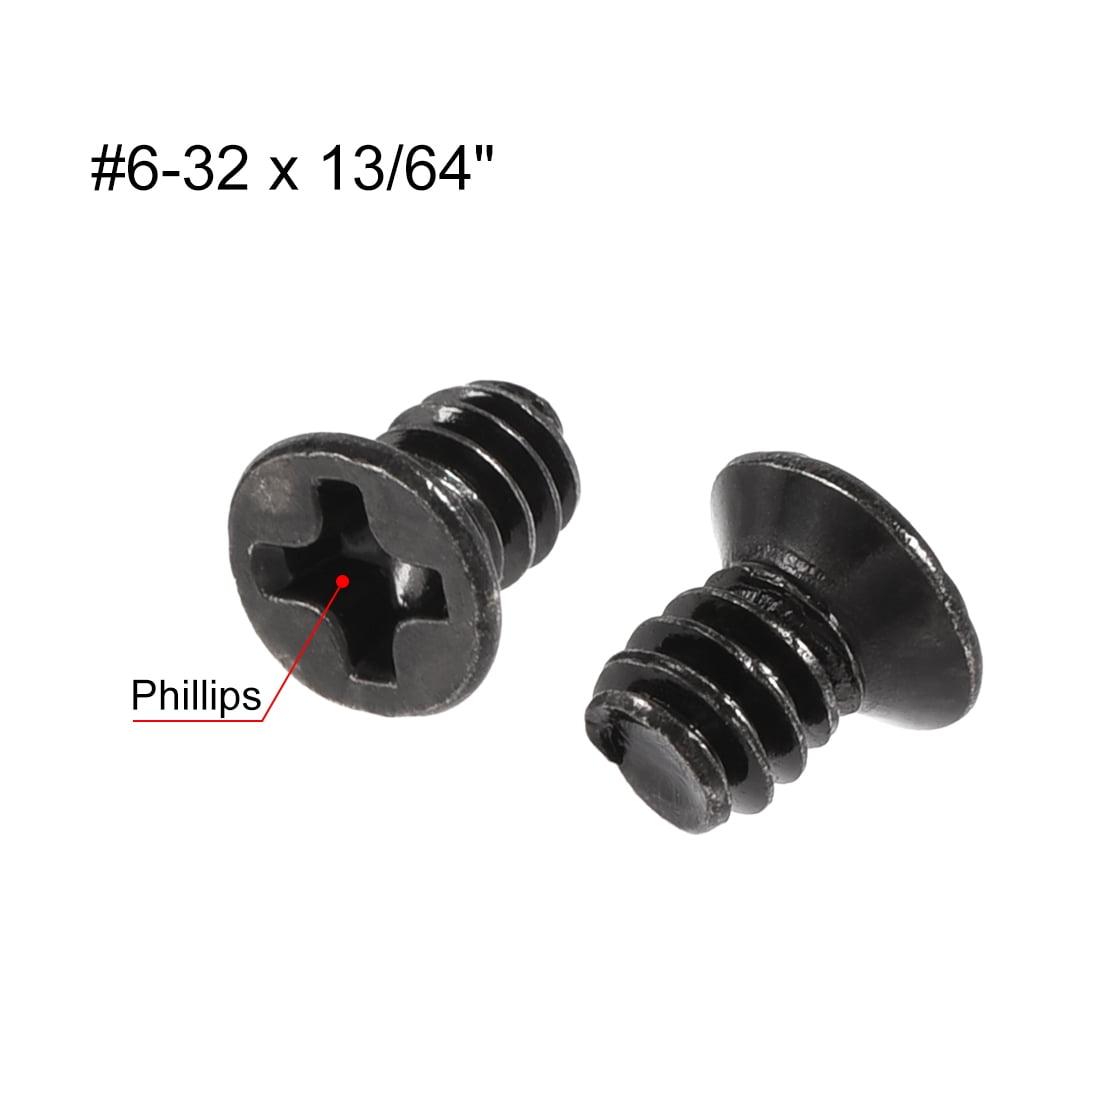 #6-32 x 13/64" Phillips Flat Head Screws Fastener Silver Tone 60pcs 